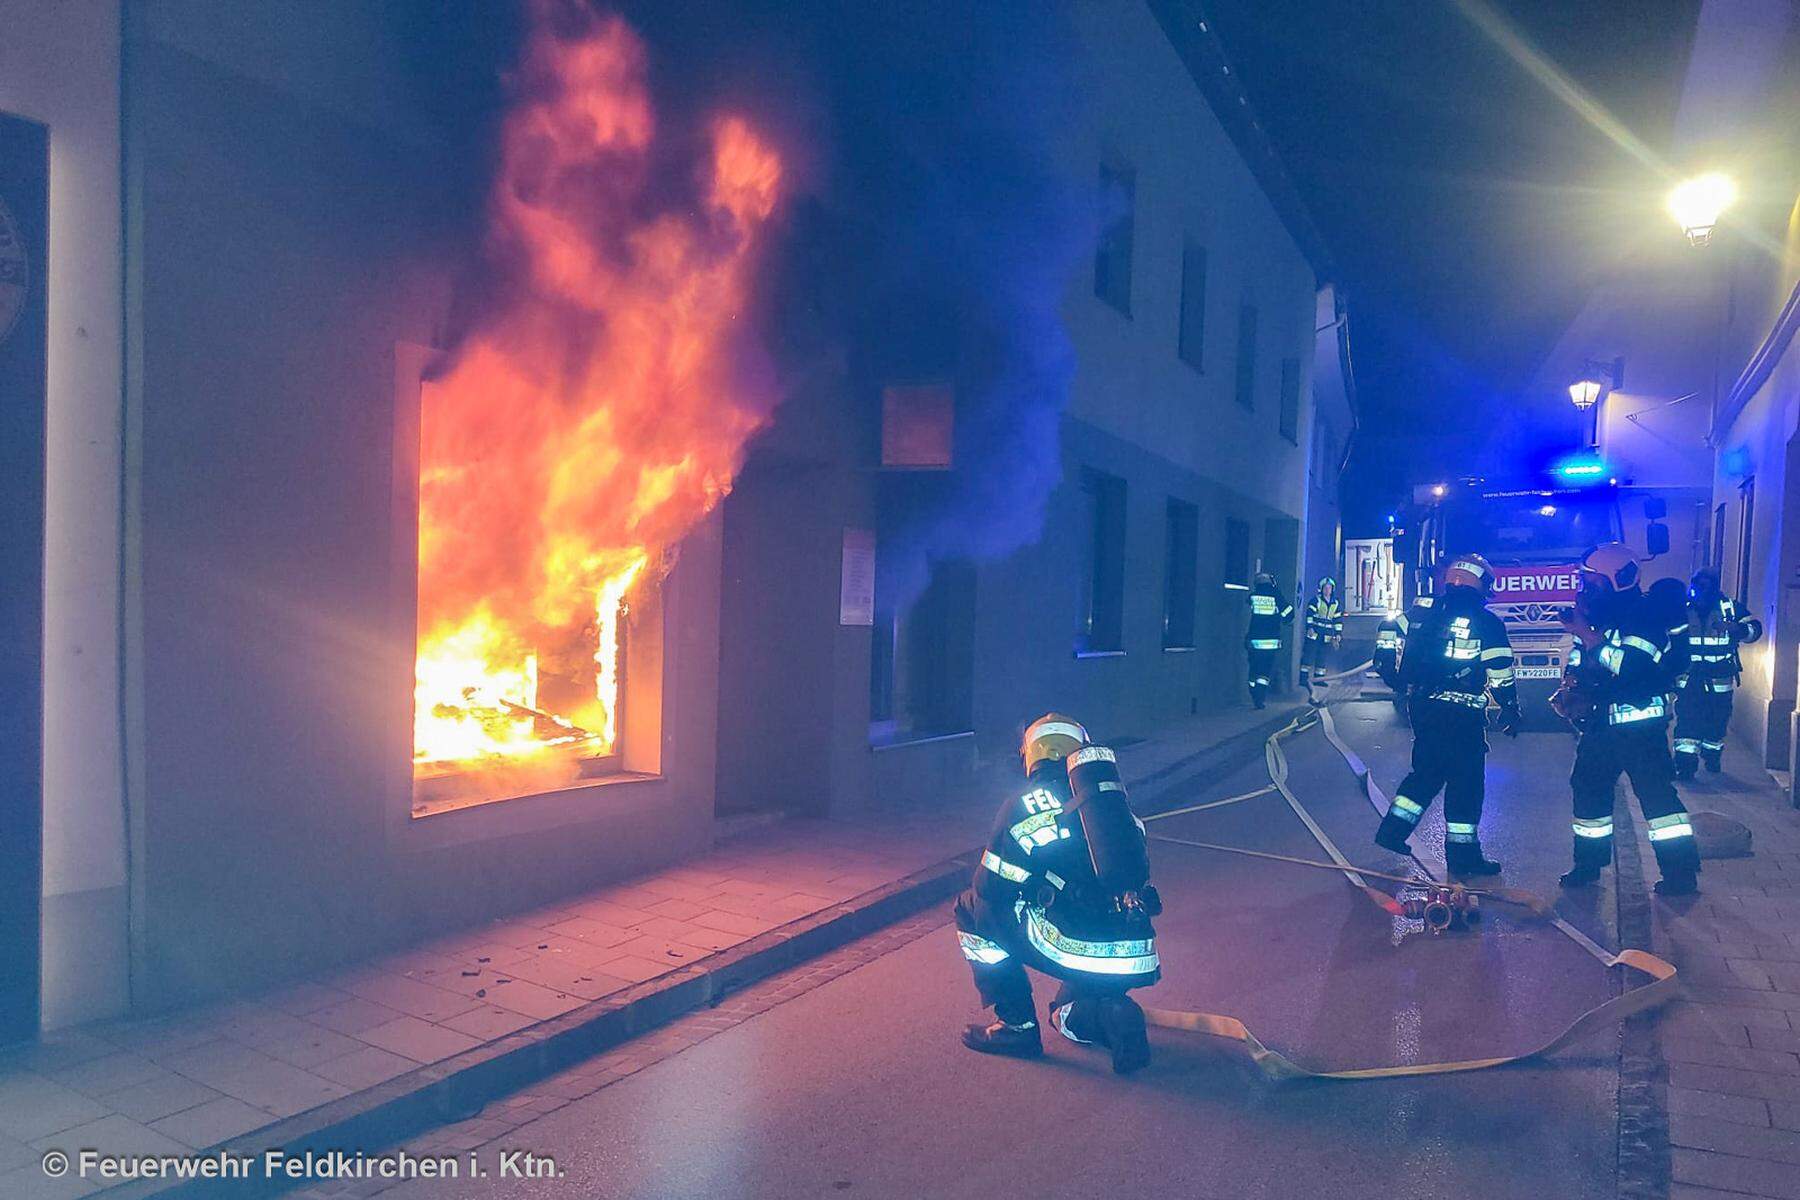 Schock nach Ermittlungen: Nächtliches Flammeninferno in Kärntner Vereinslokal war wohl Brandstiftung